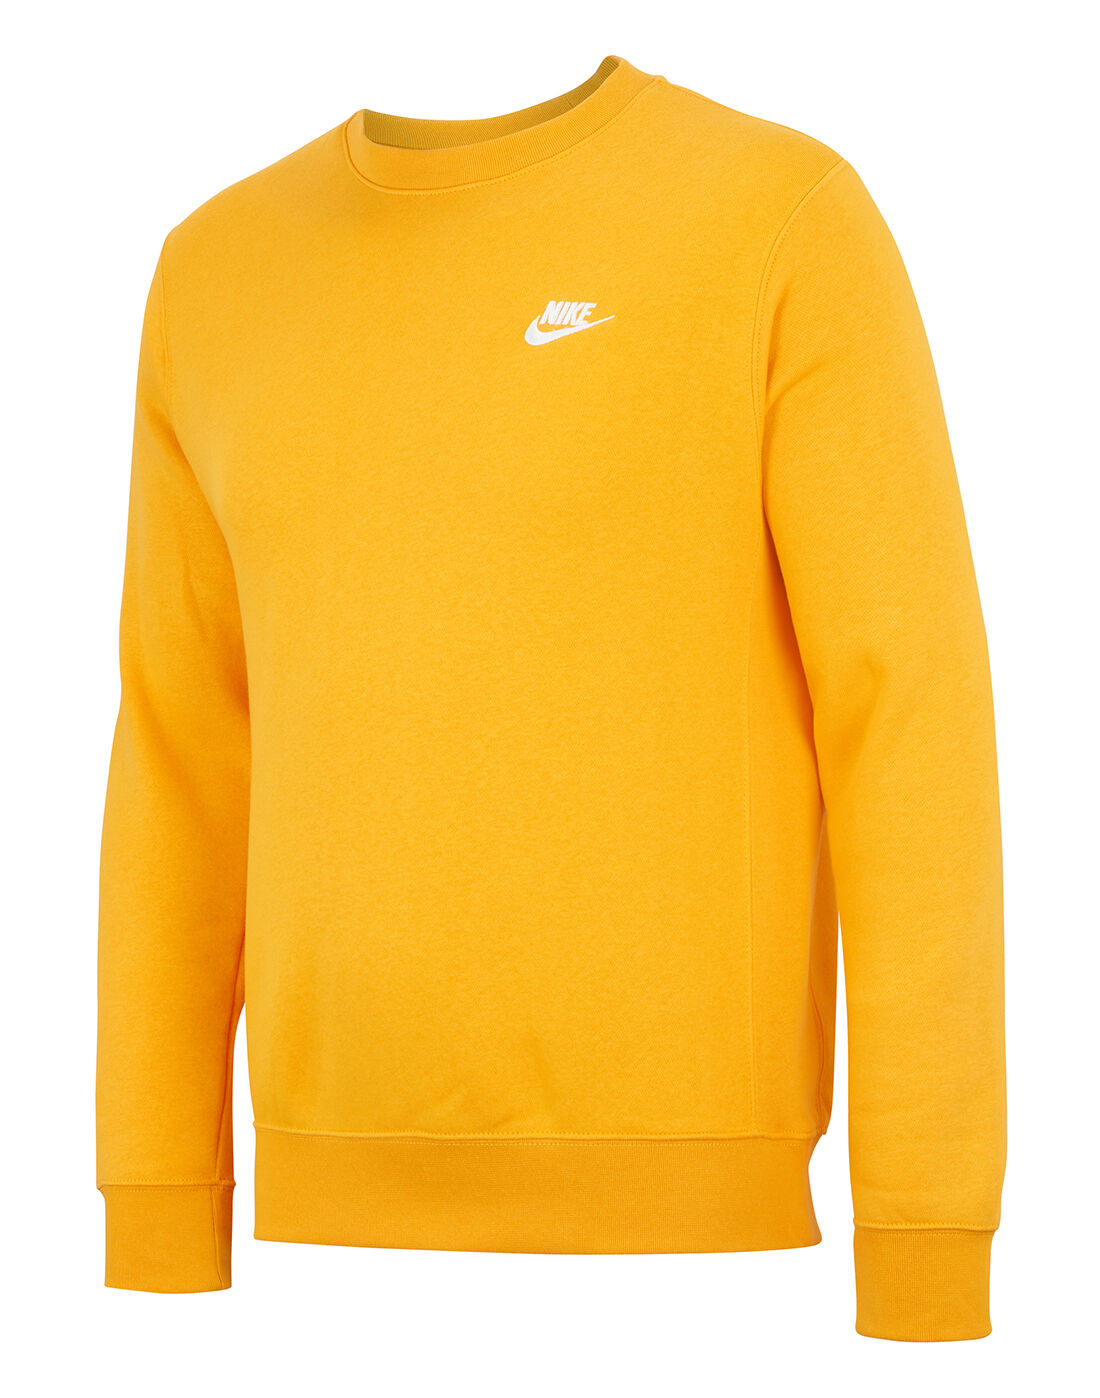 nike yellow sweatshirt